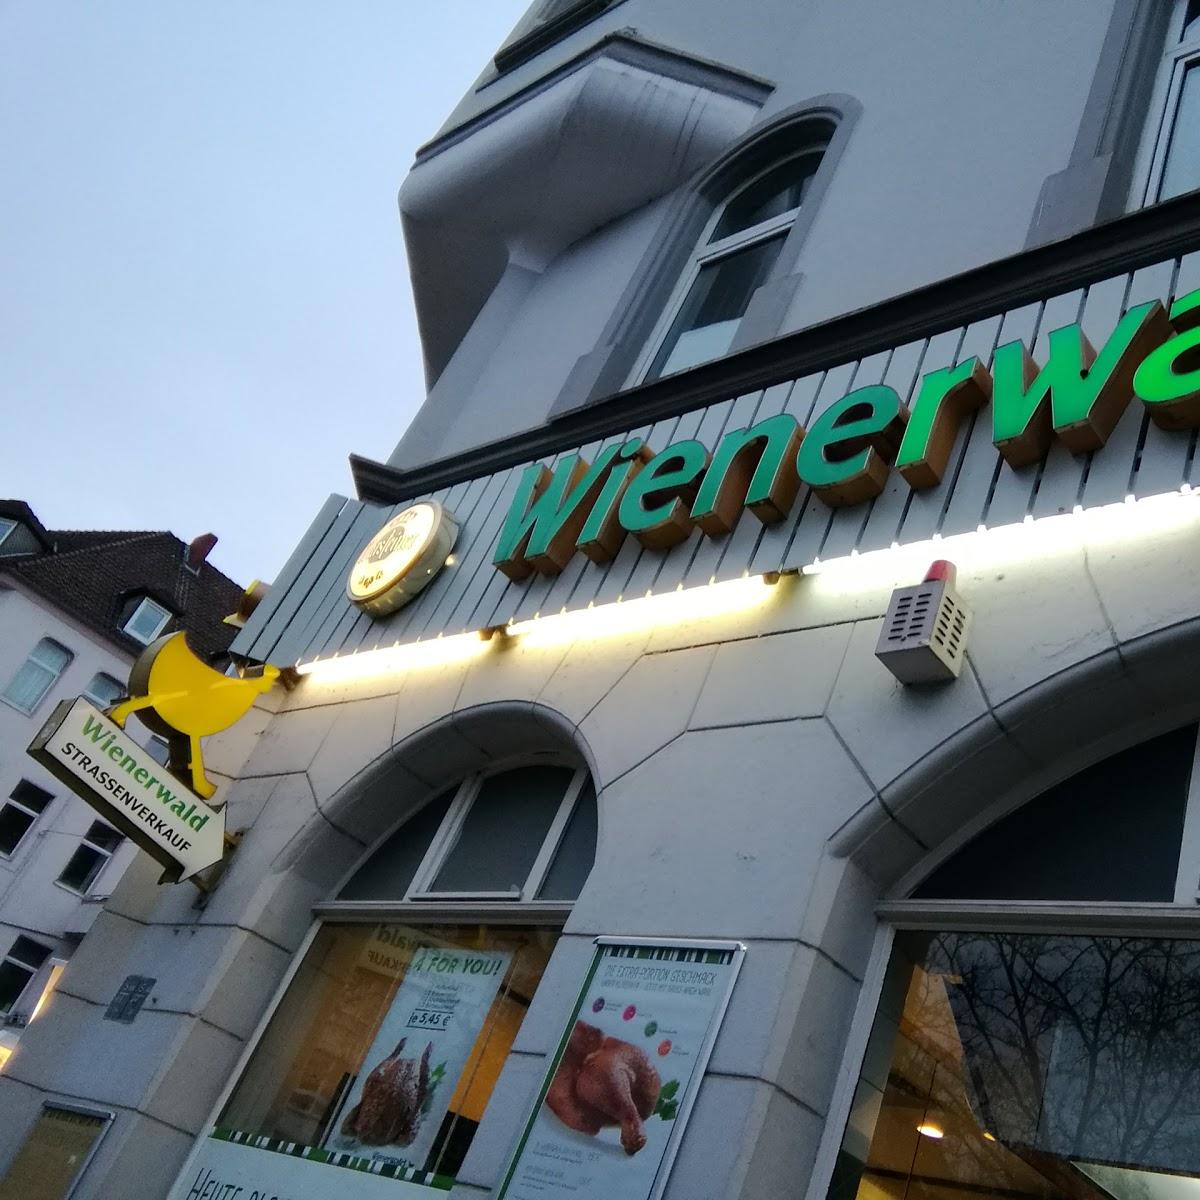 Restaurant "Wienerwald" in Hannover